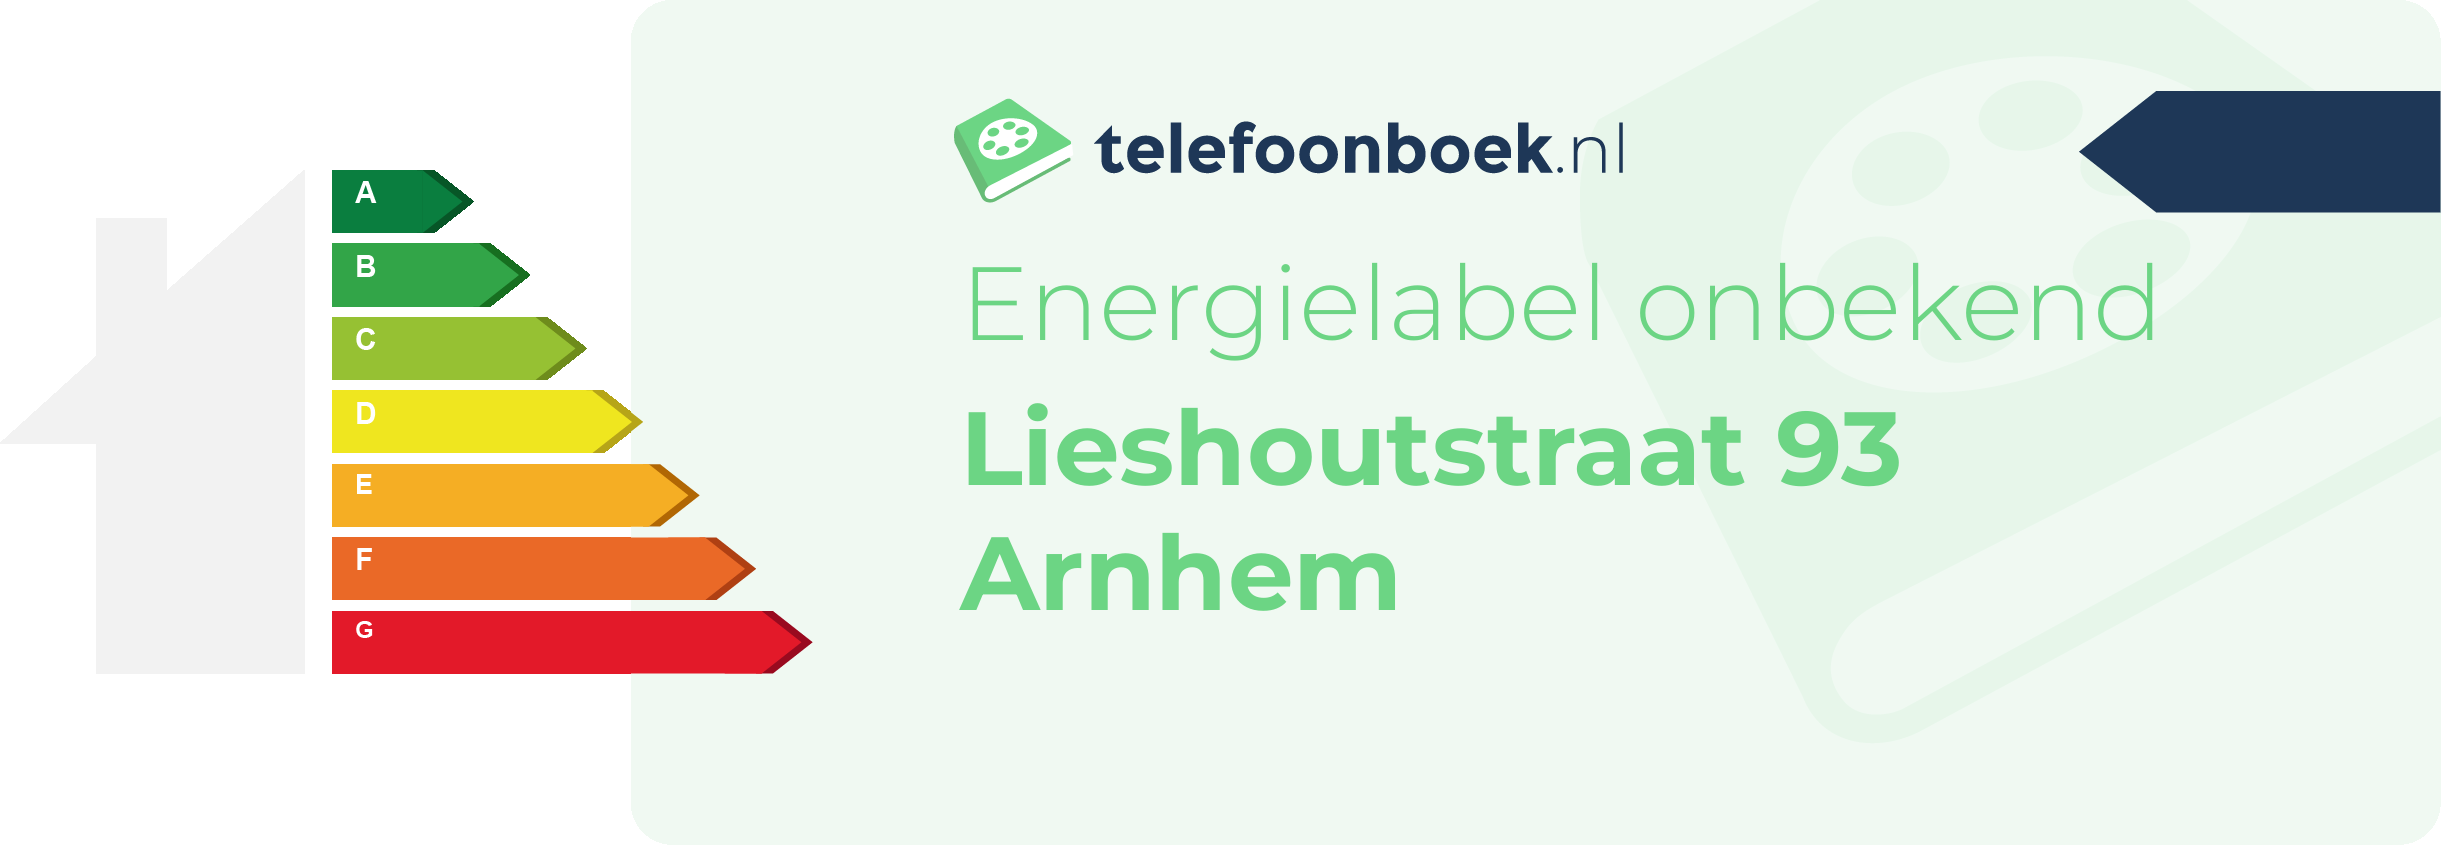 Energielabel Lieshoutstraat 93 Arnhem